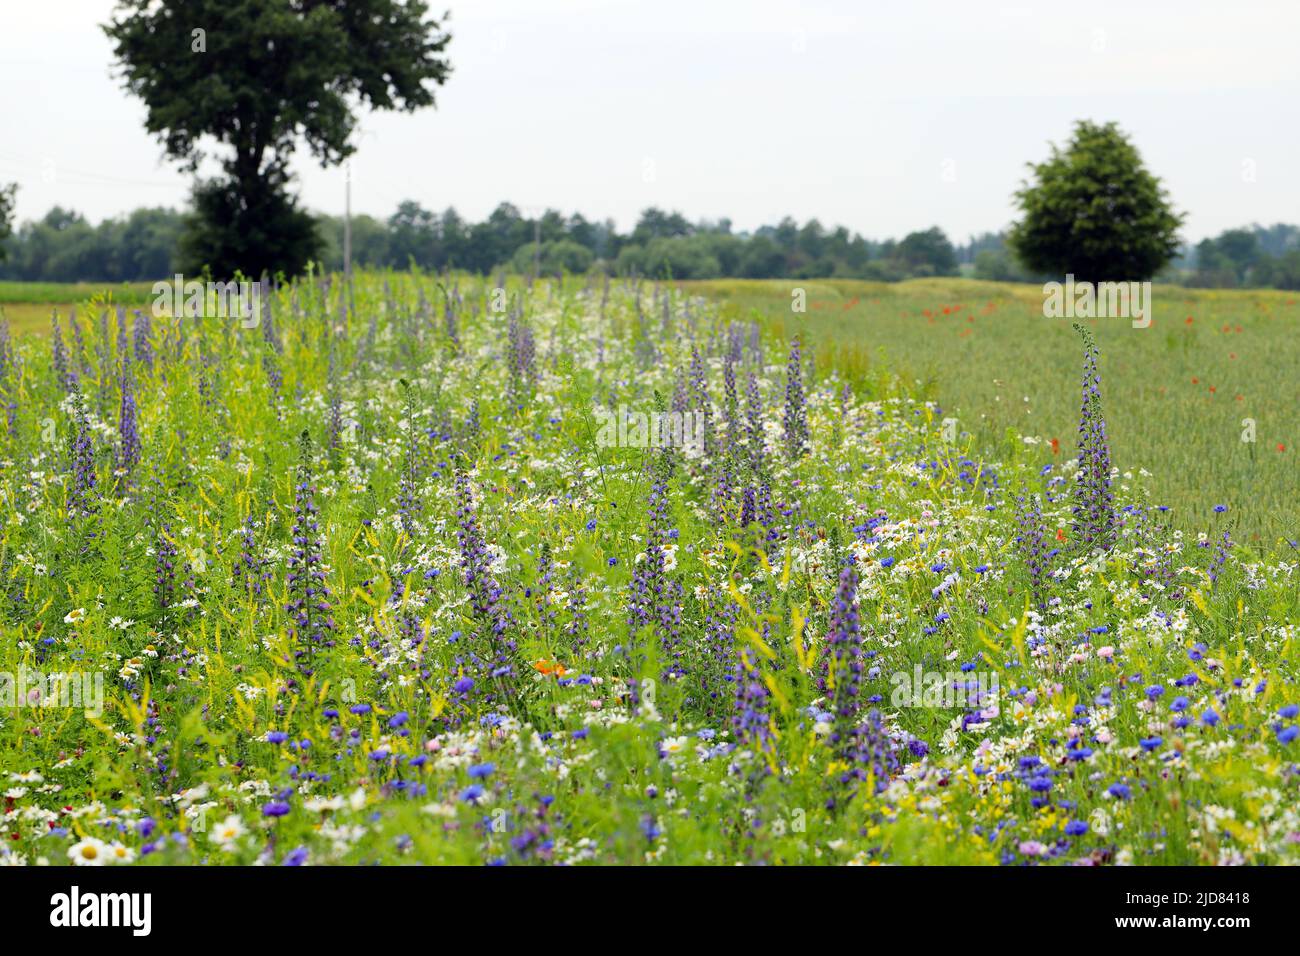 Prairie de fleurs semée entre les cultures dans un paysage agricole. Banque D'Images